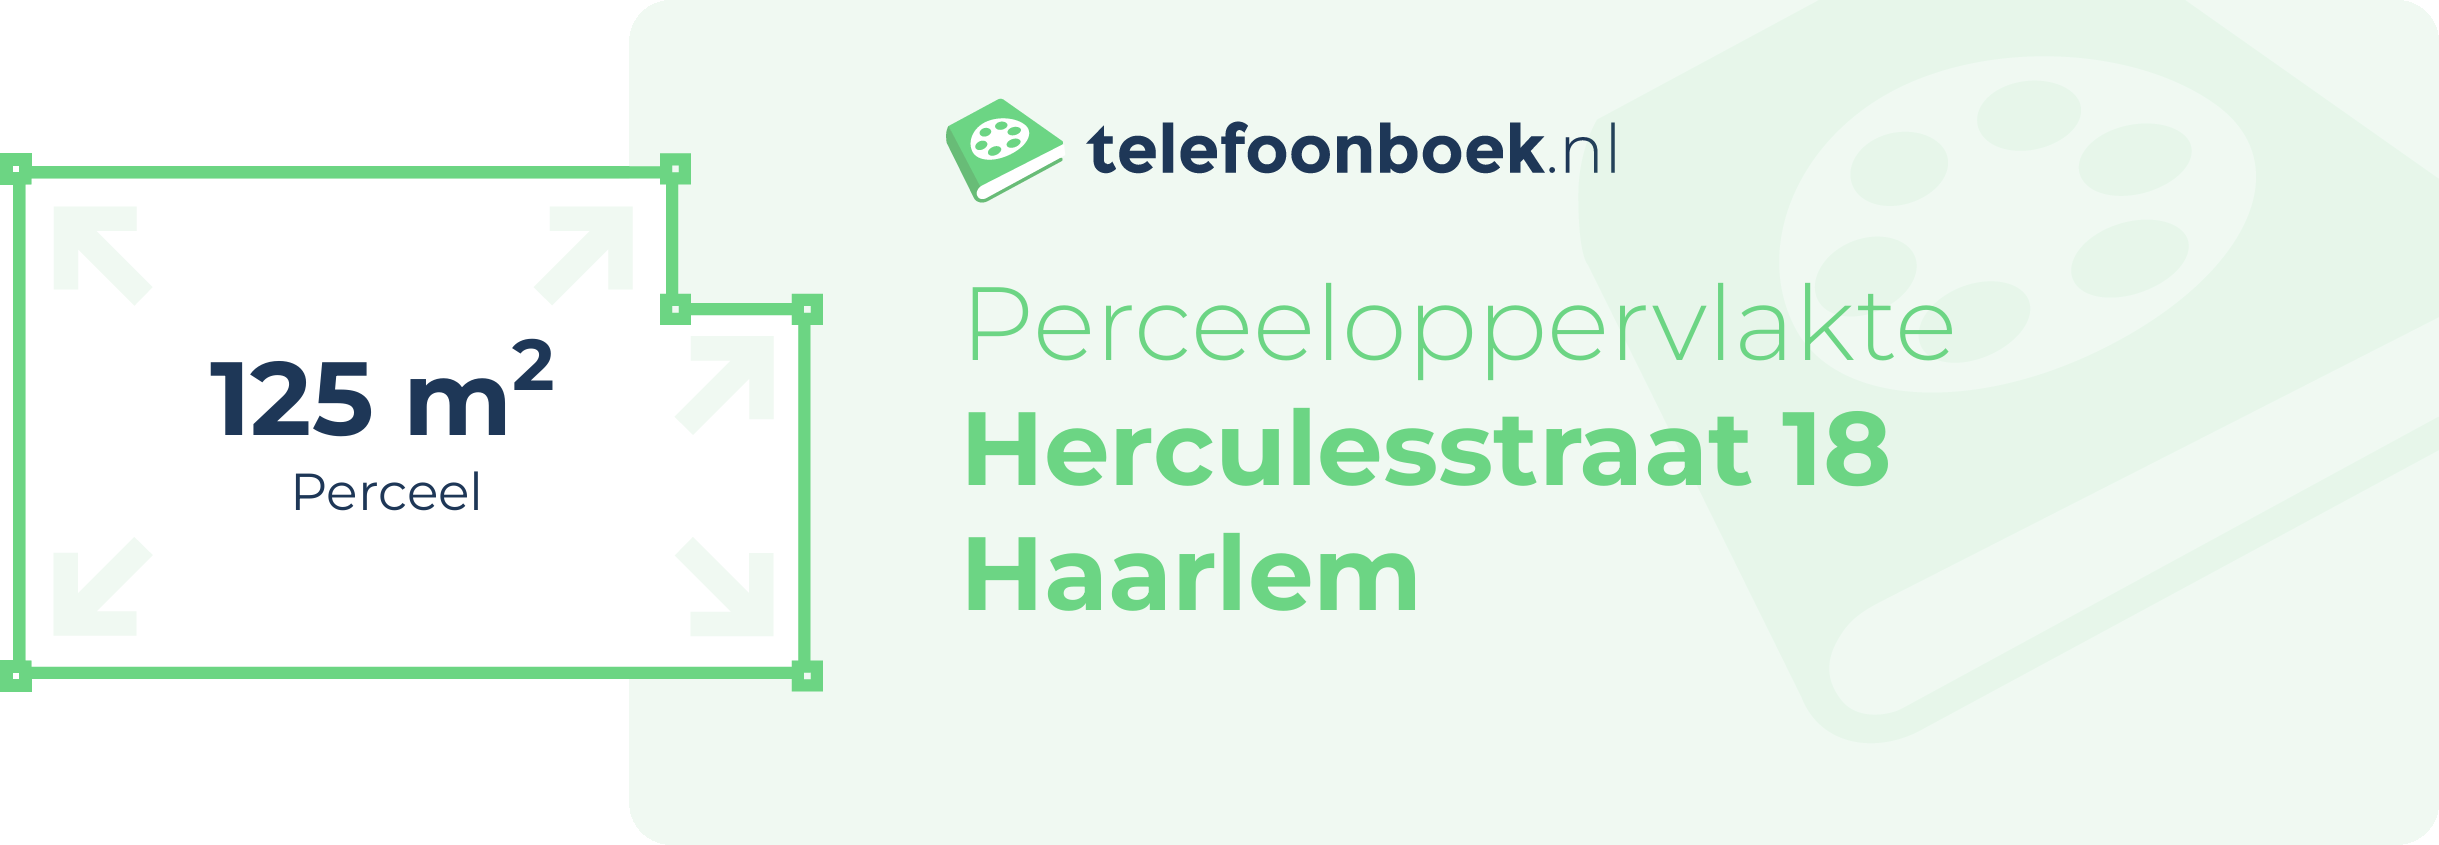 Perceeloppervlakte Herculesstraat 18 Haarlem